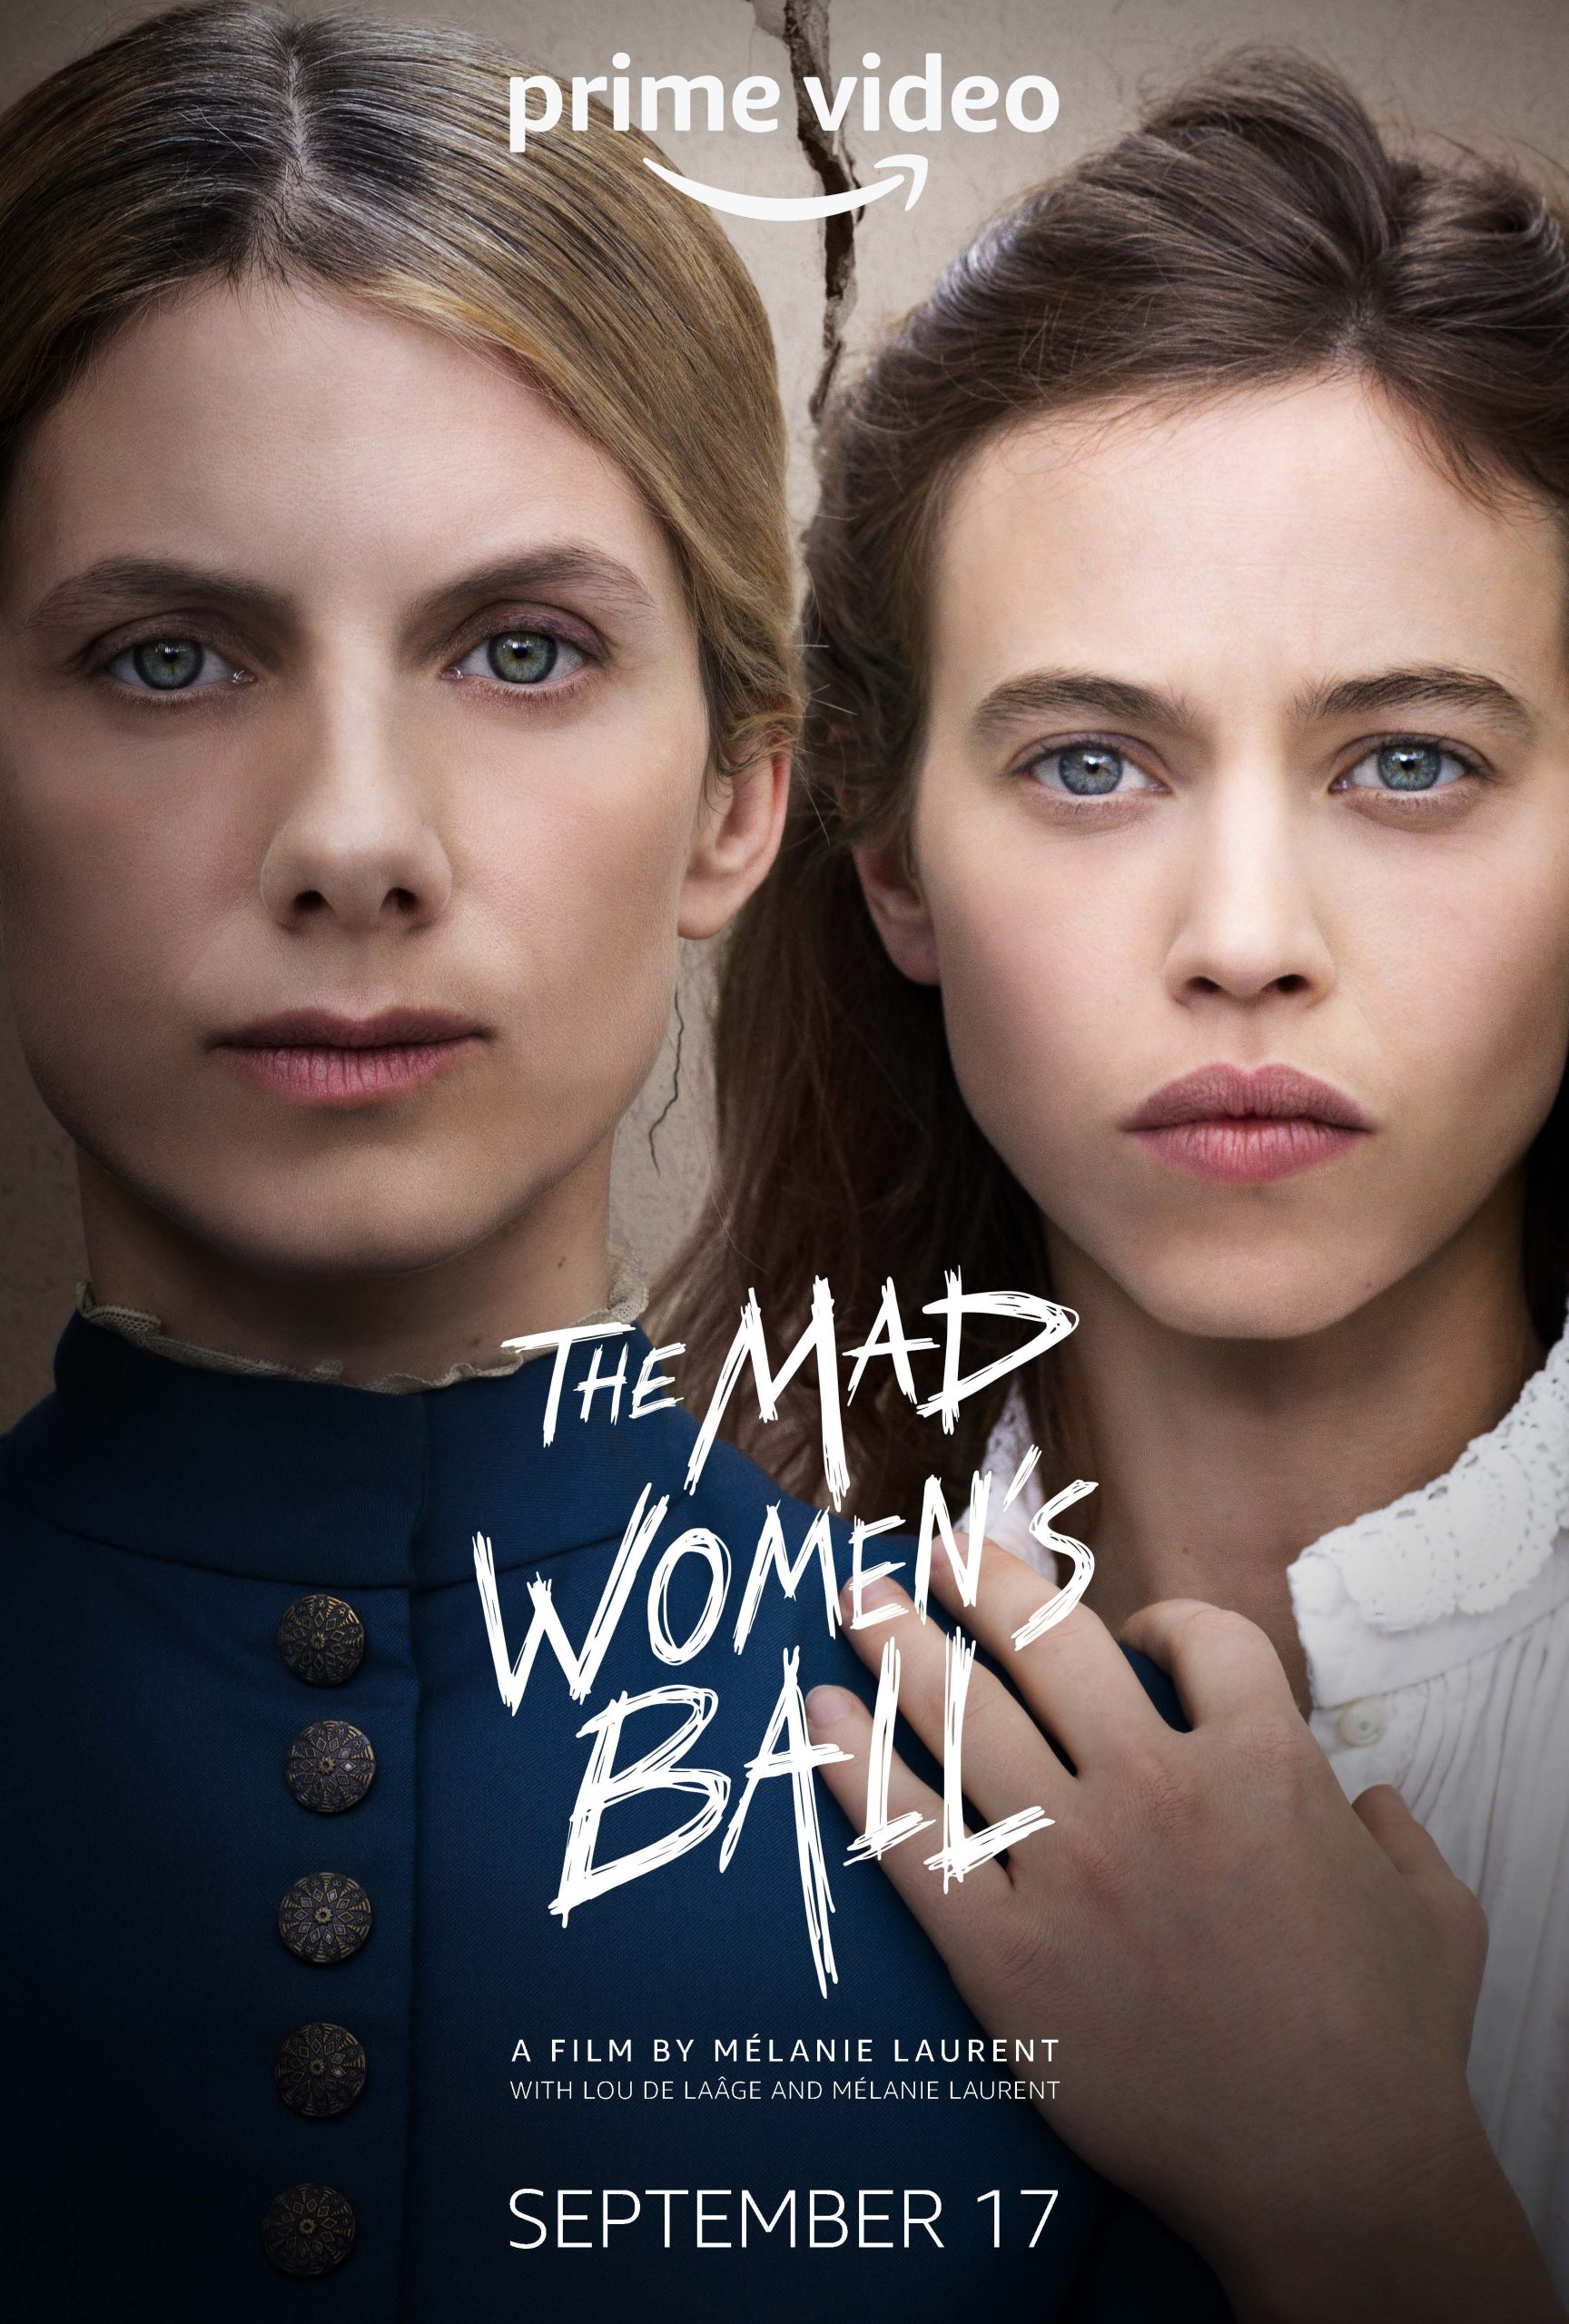 El don de la locura: Una entrevista con Mélanie Laurent por 'The Mad Women's Ball'